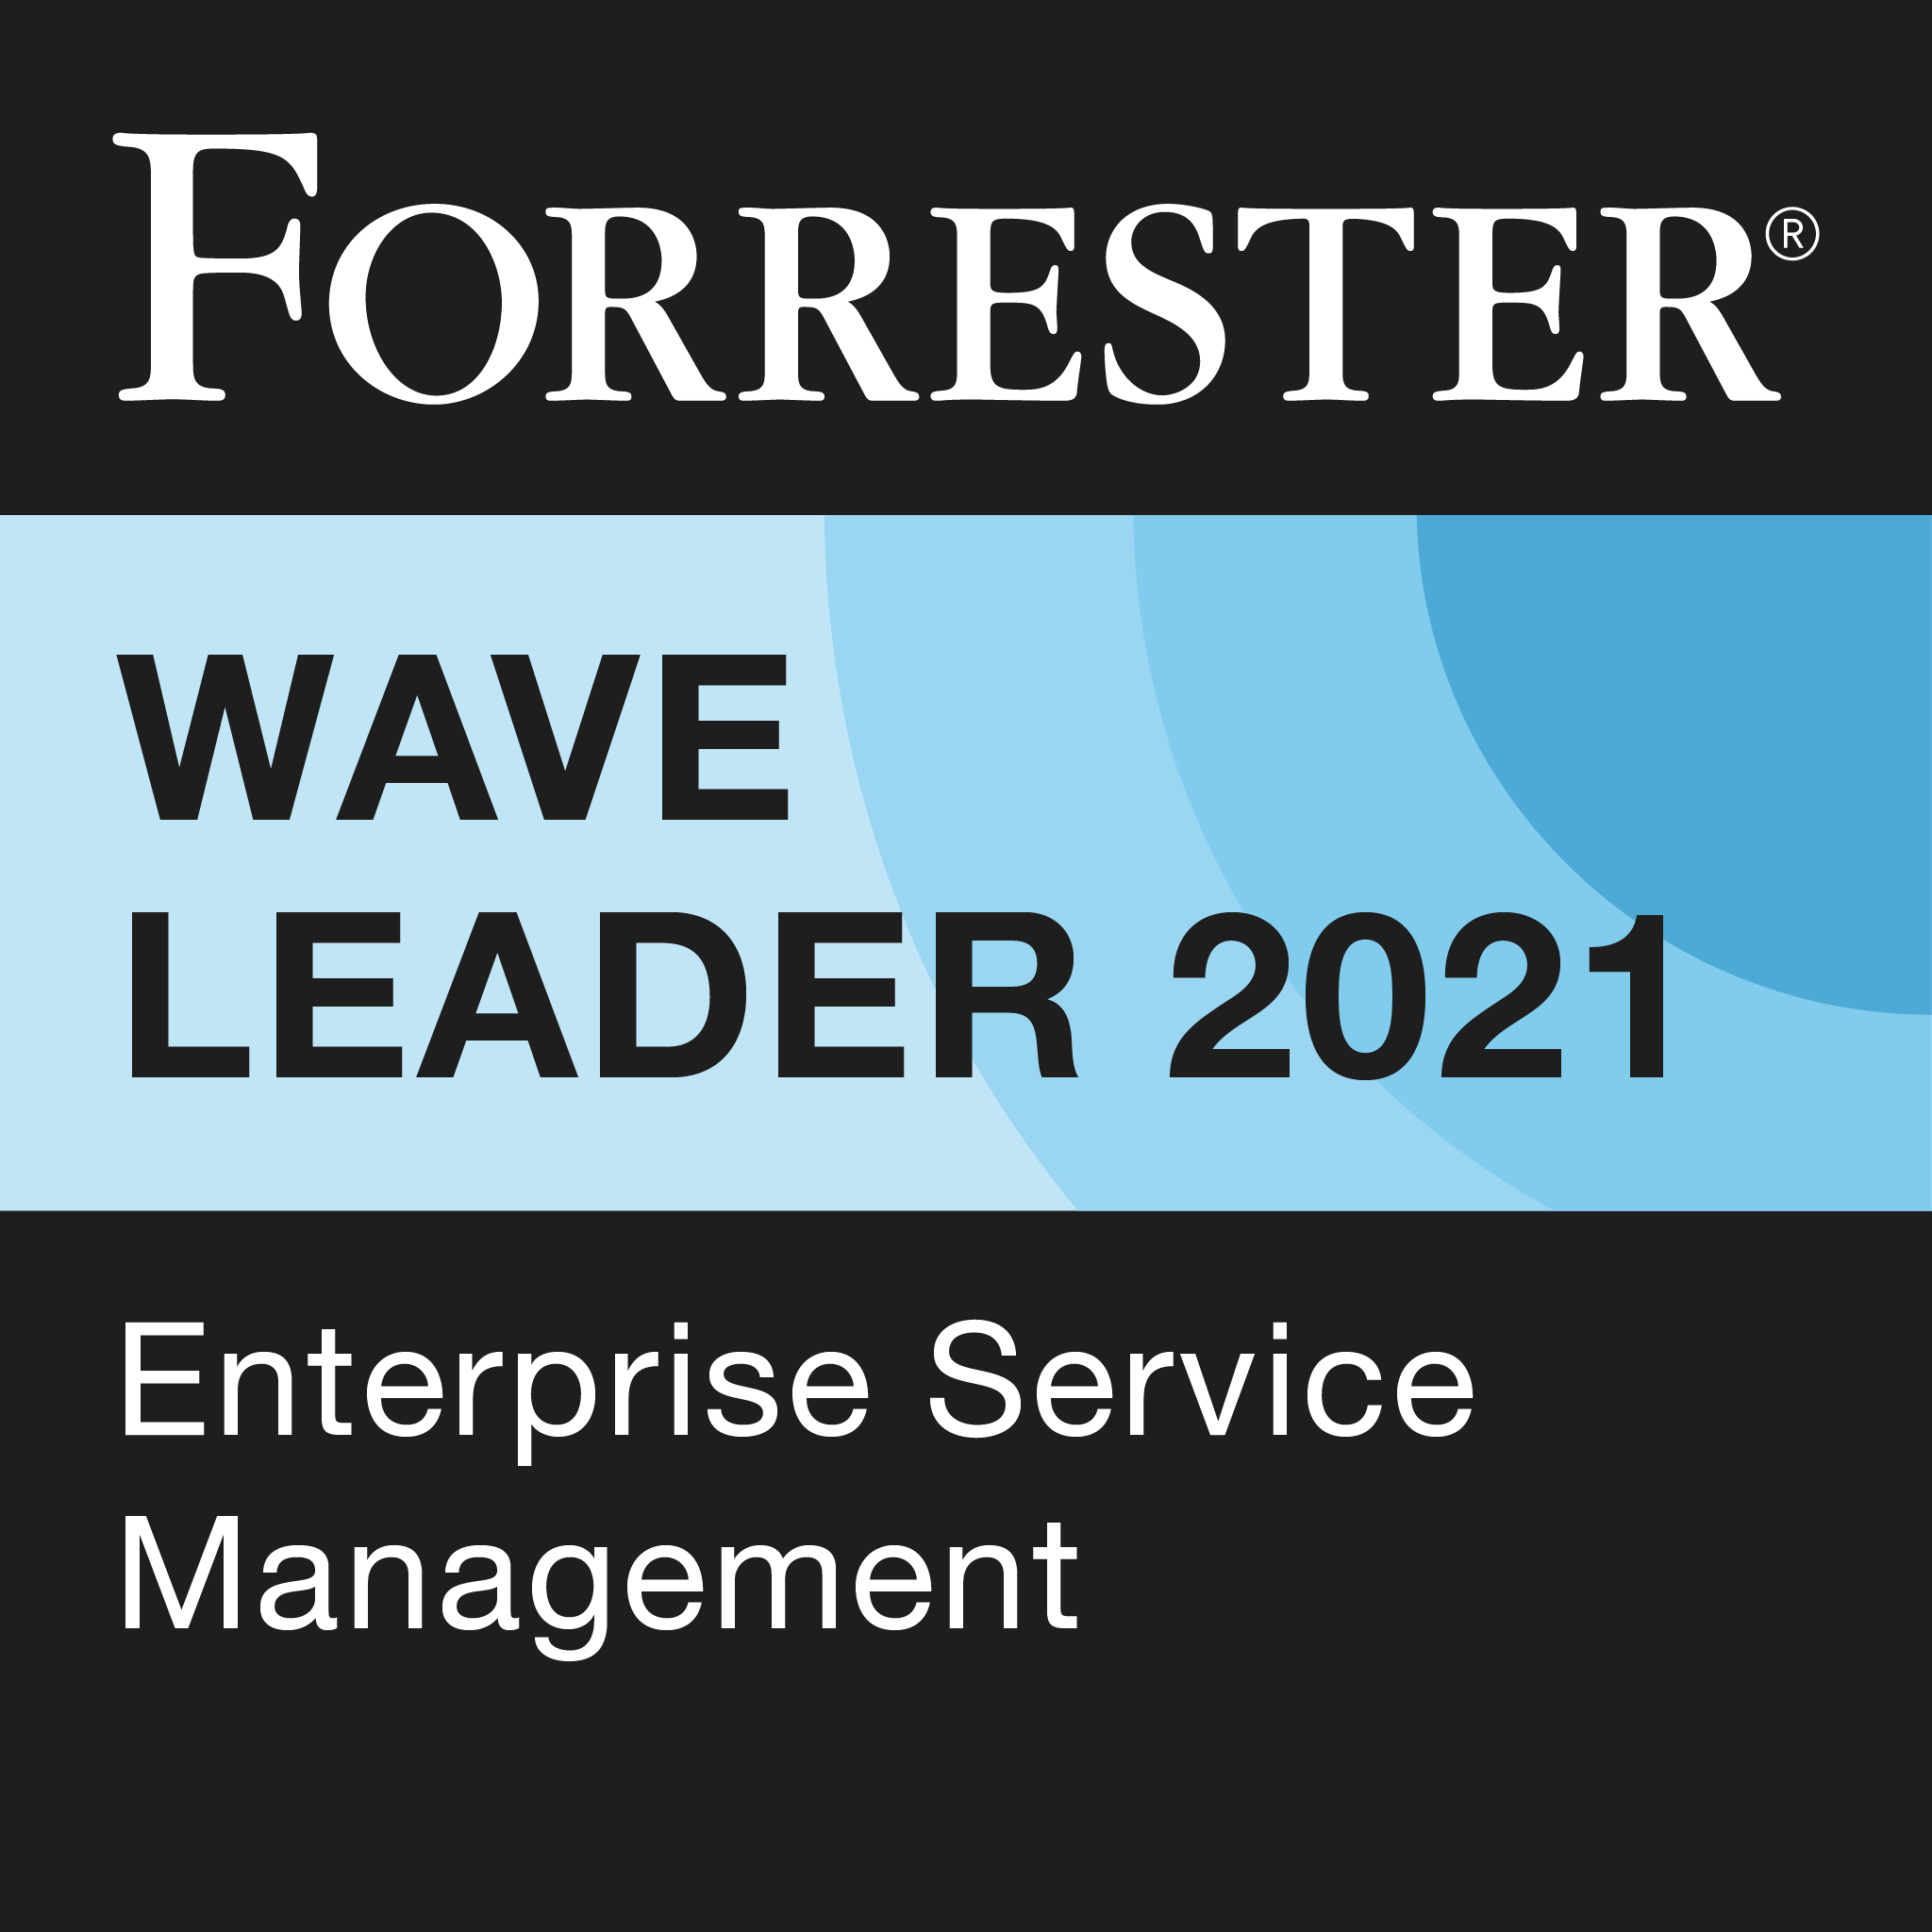 Лидер 2021 года по версии Forrester Wave; отчет об управлении корпоративными услугами